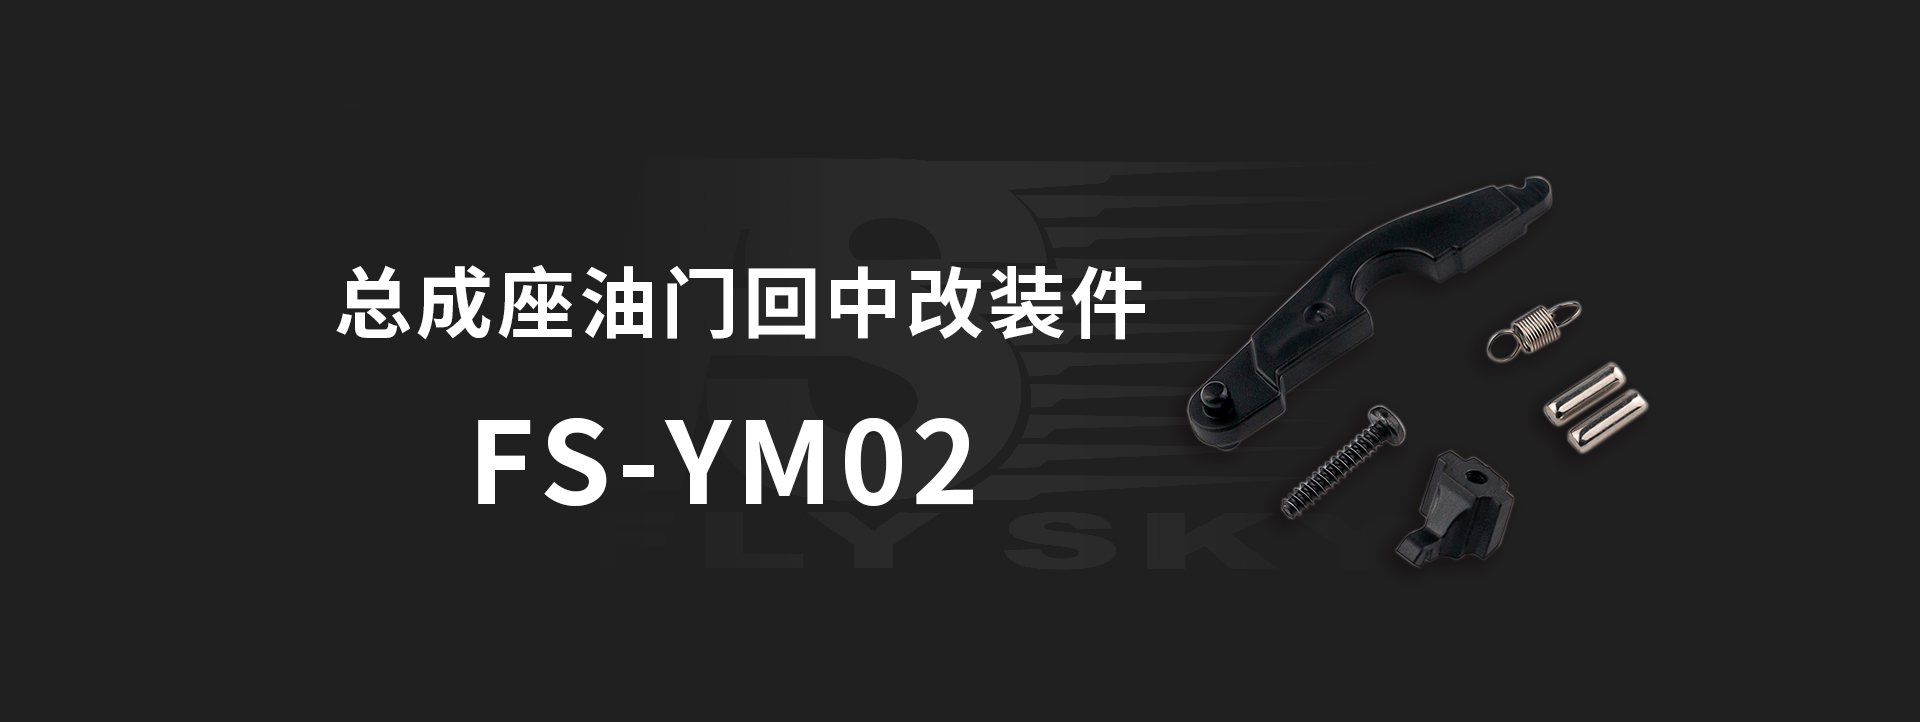 FS-YM02